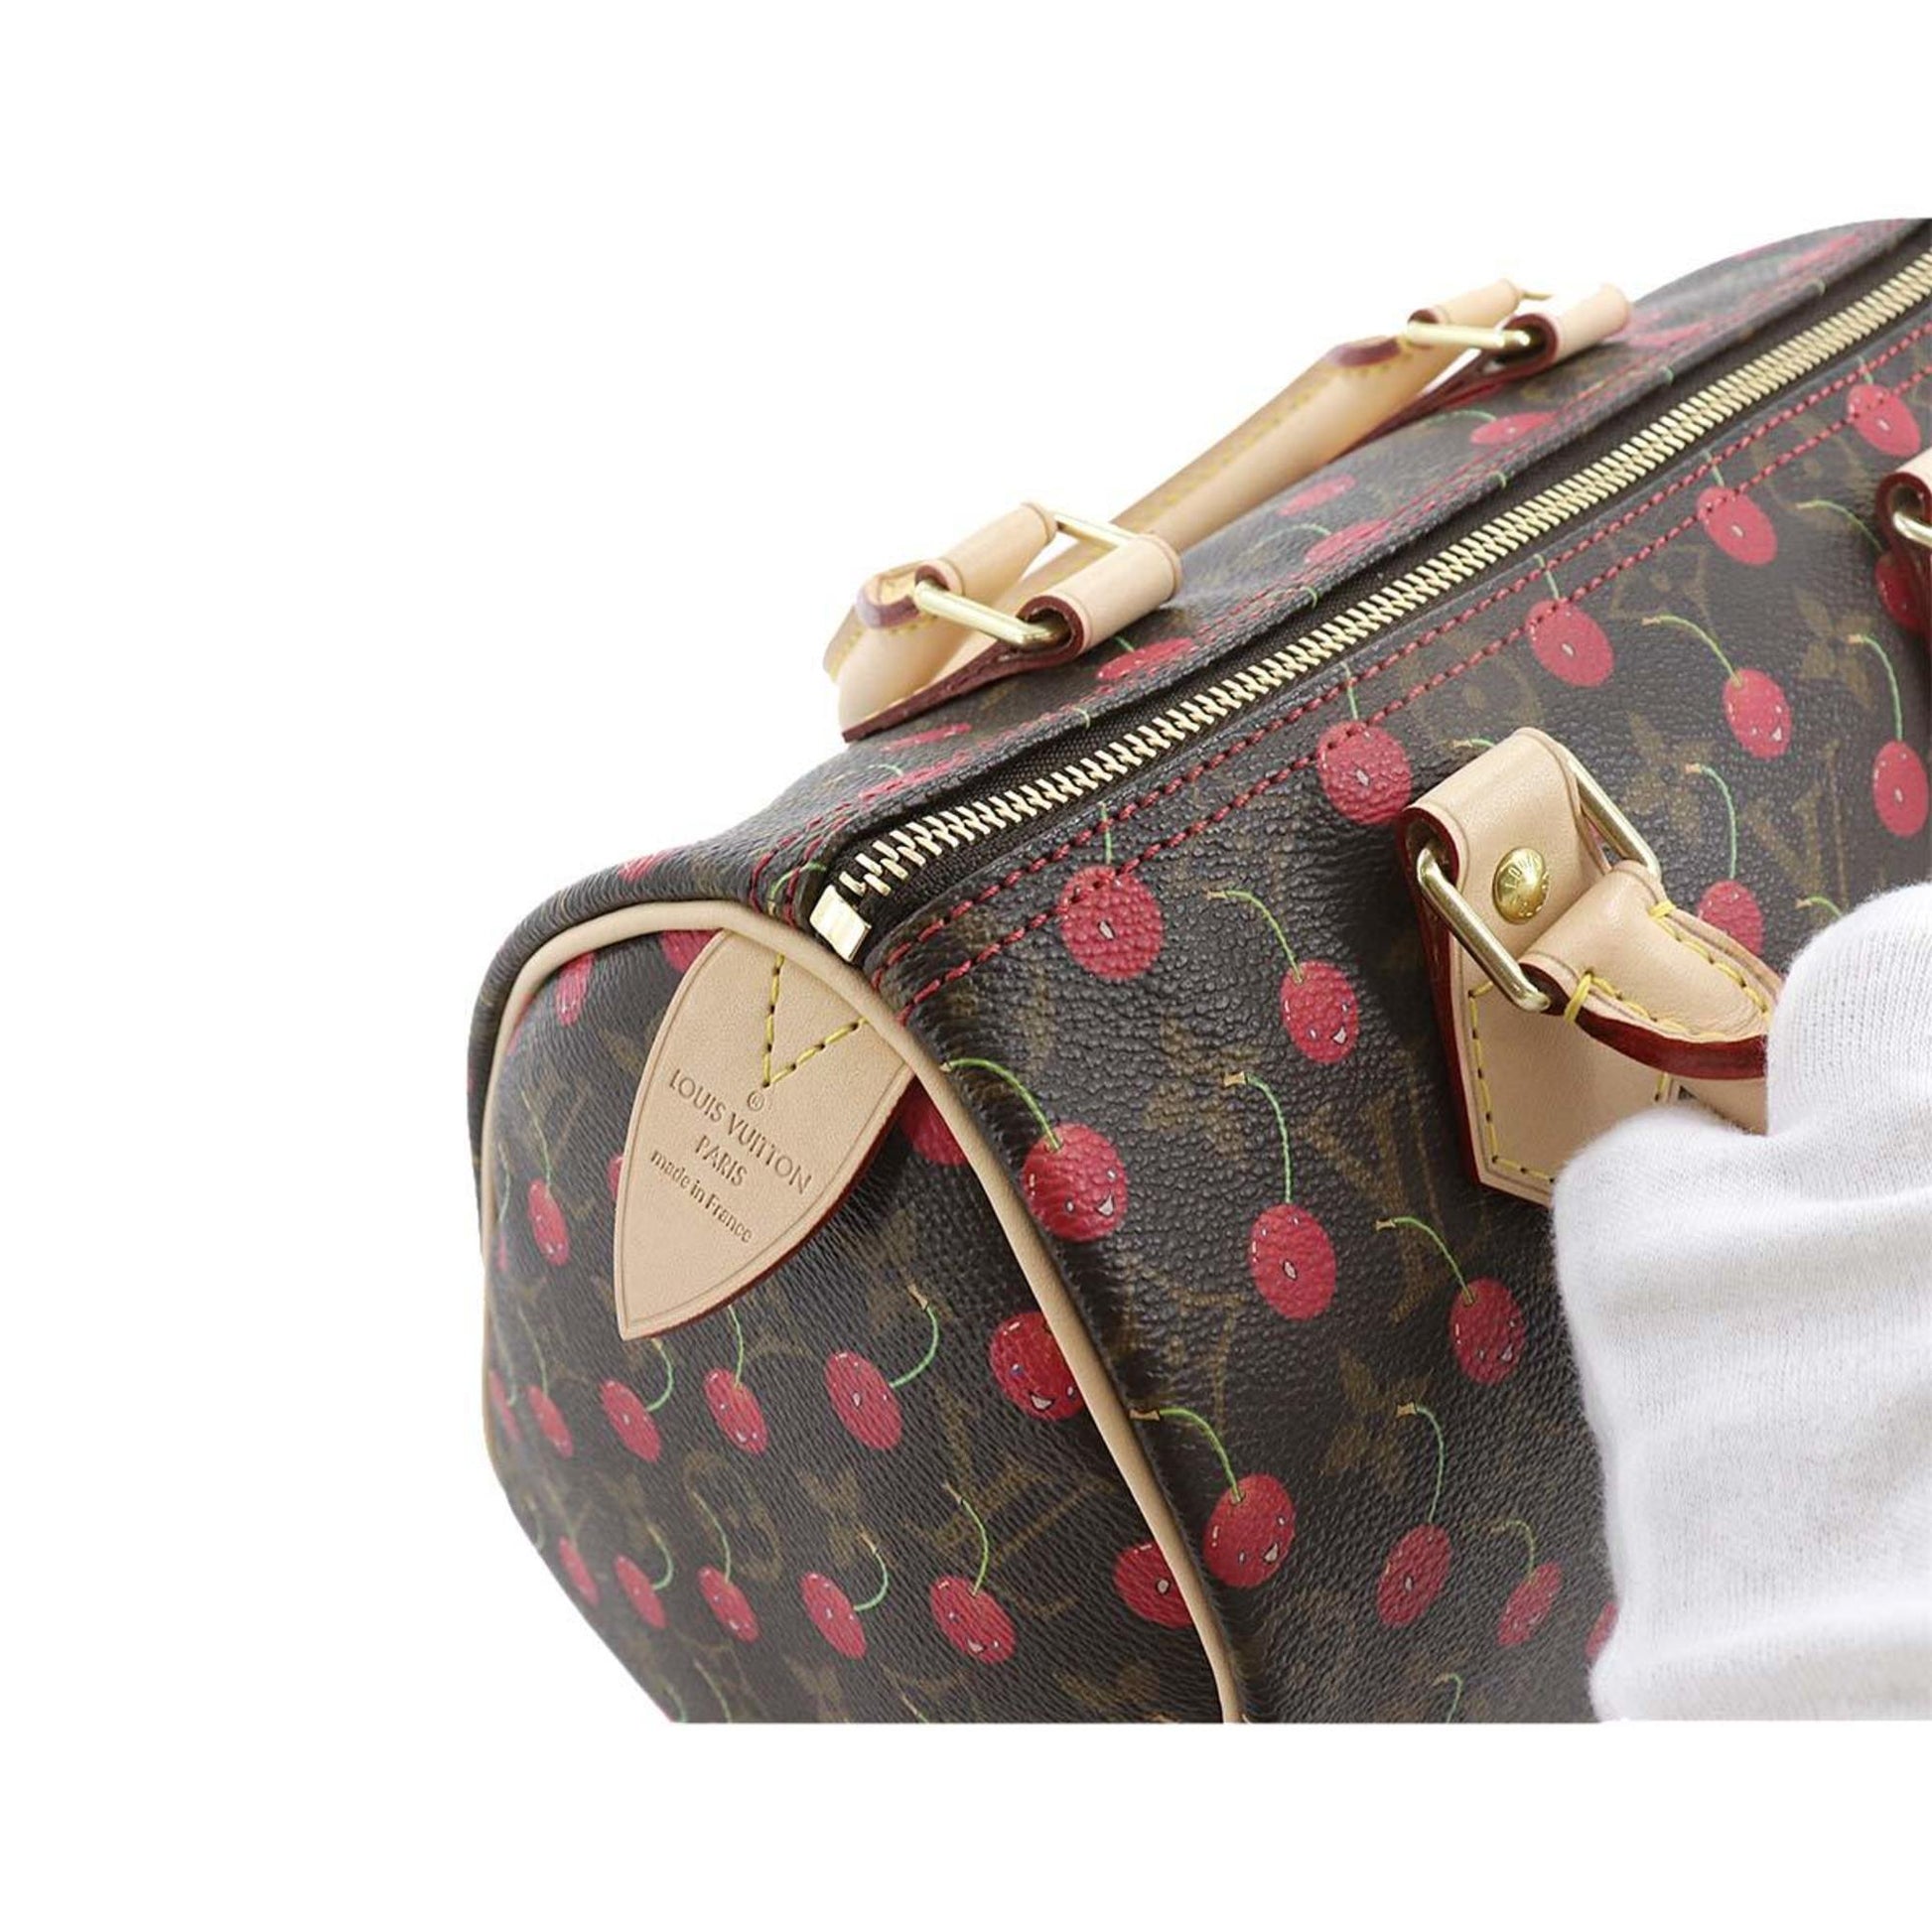 Louis Vuitton Monogram Cherry Speedy 25 Handbag M95009 Takashi Murakam